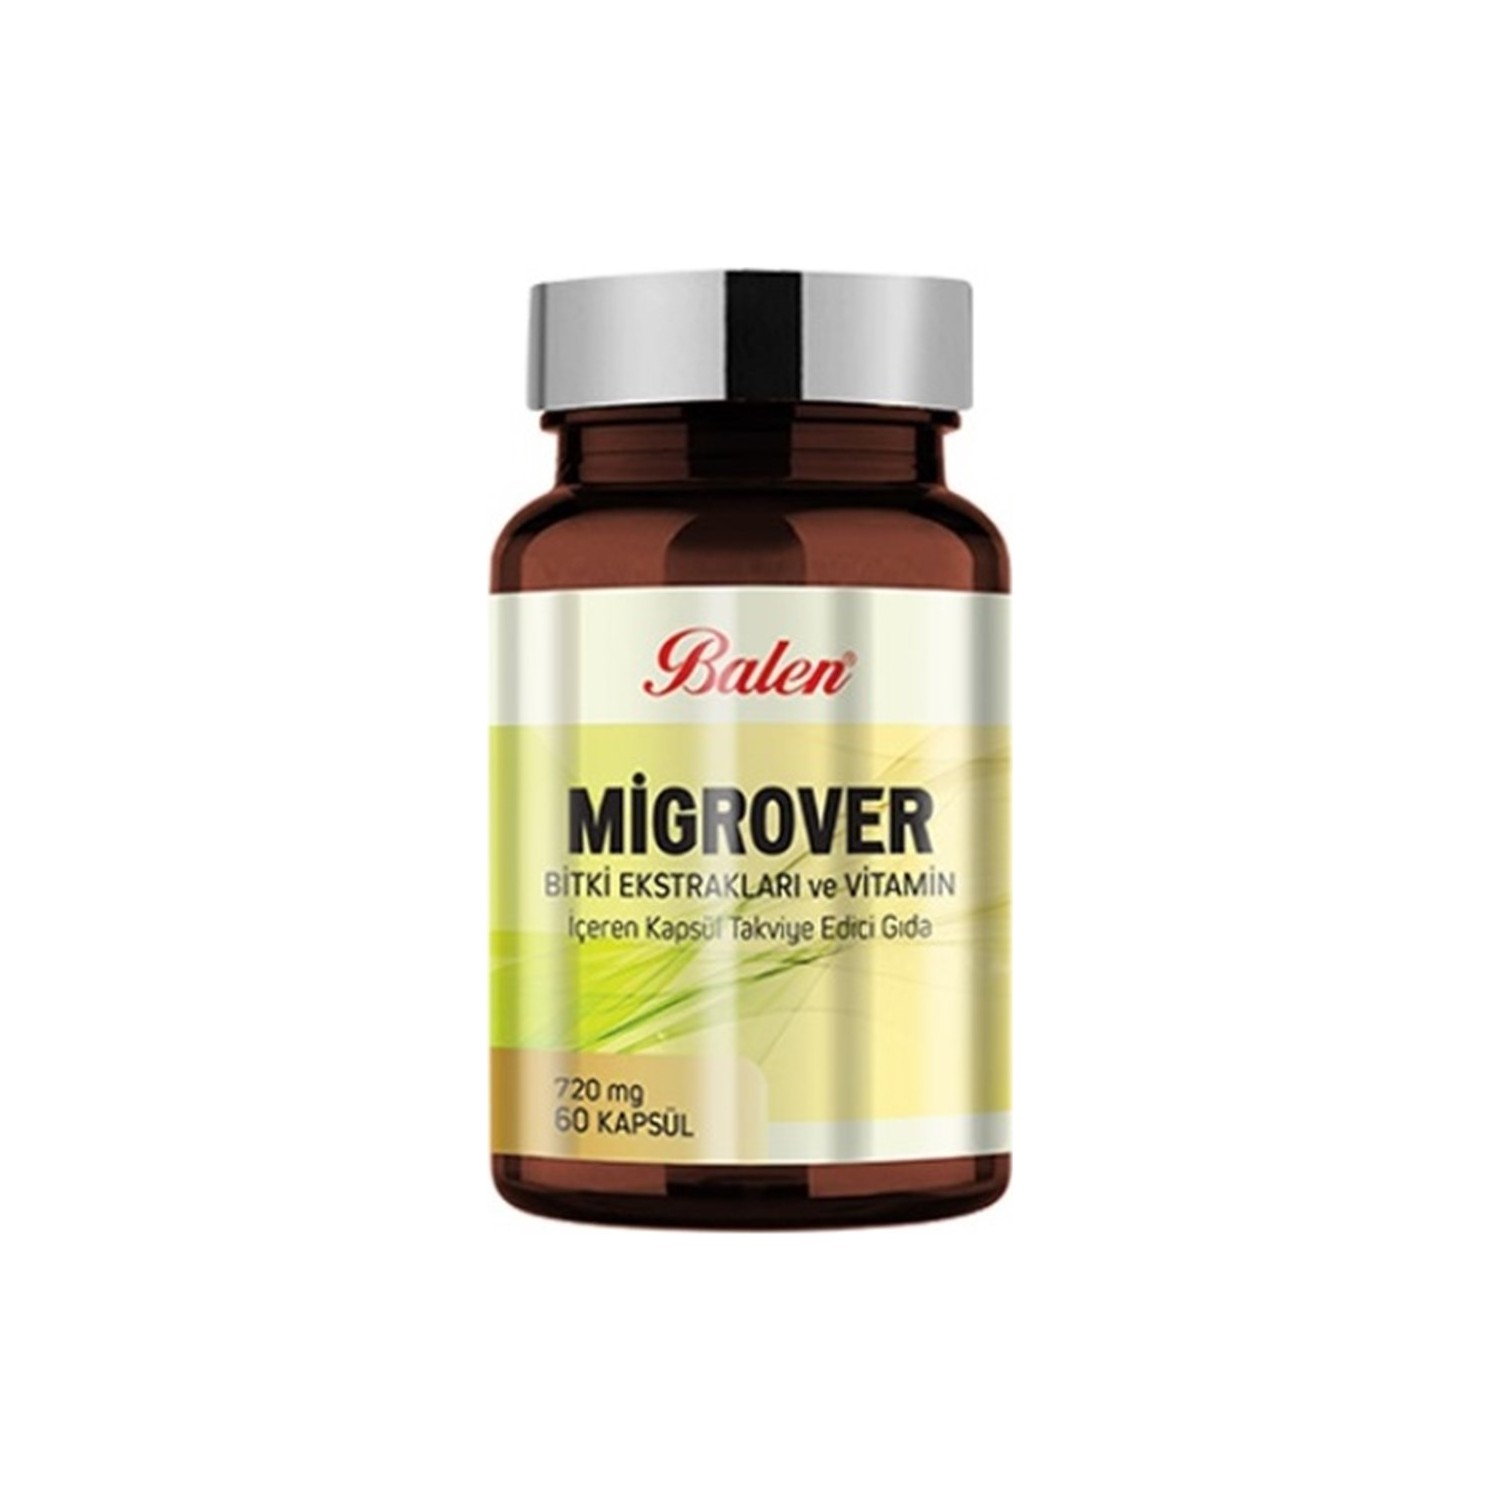 Капсулы Balen Migrover, содержащие растительные экстракты и витамины, 60 капсул, 720 мг, 3 штуки